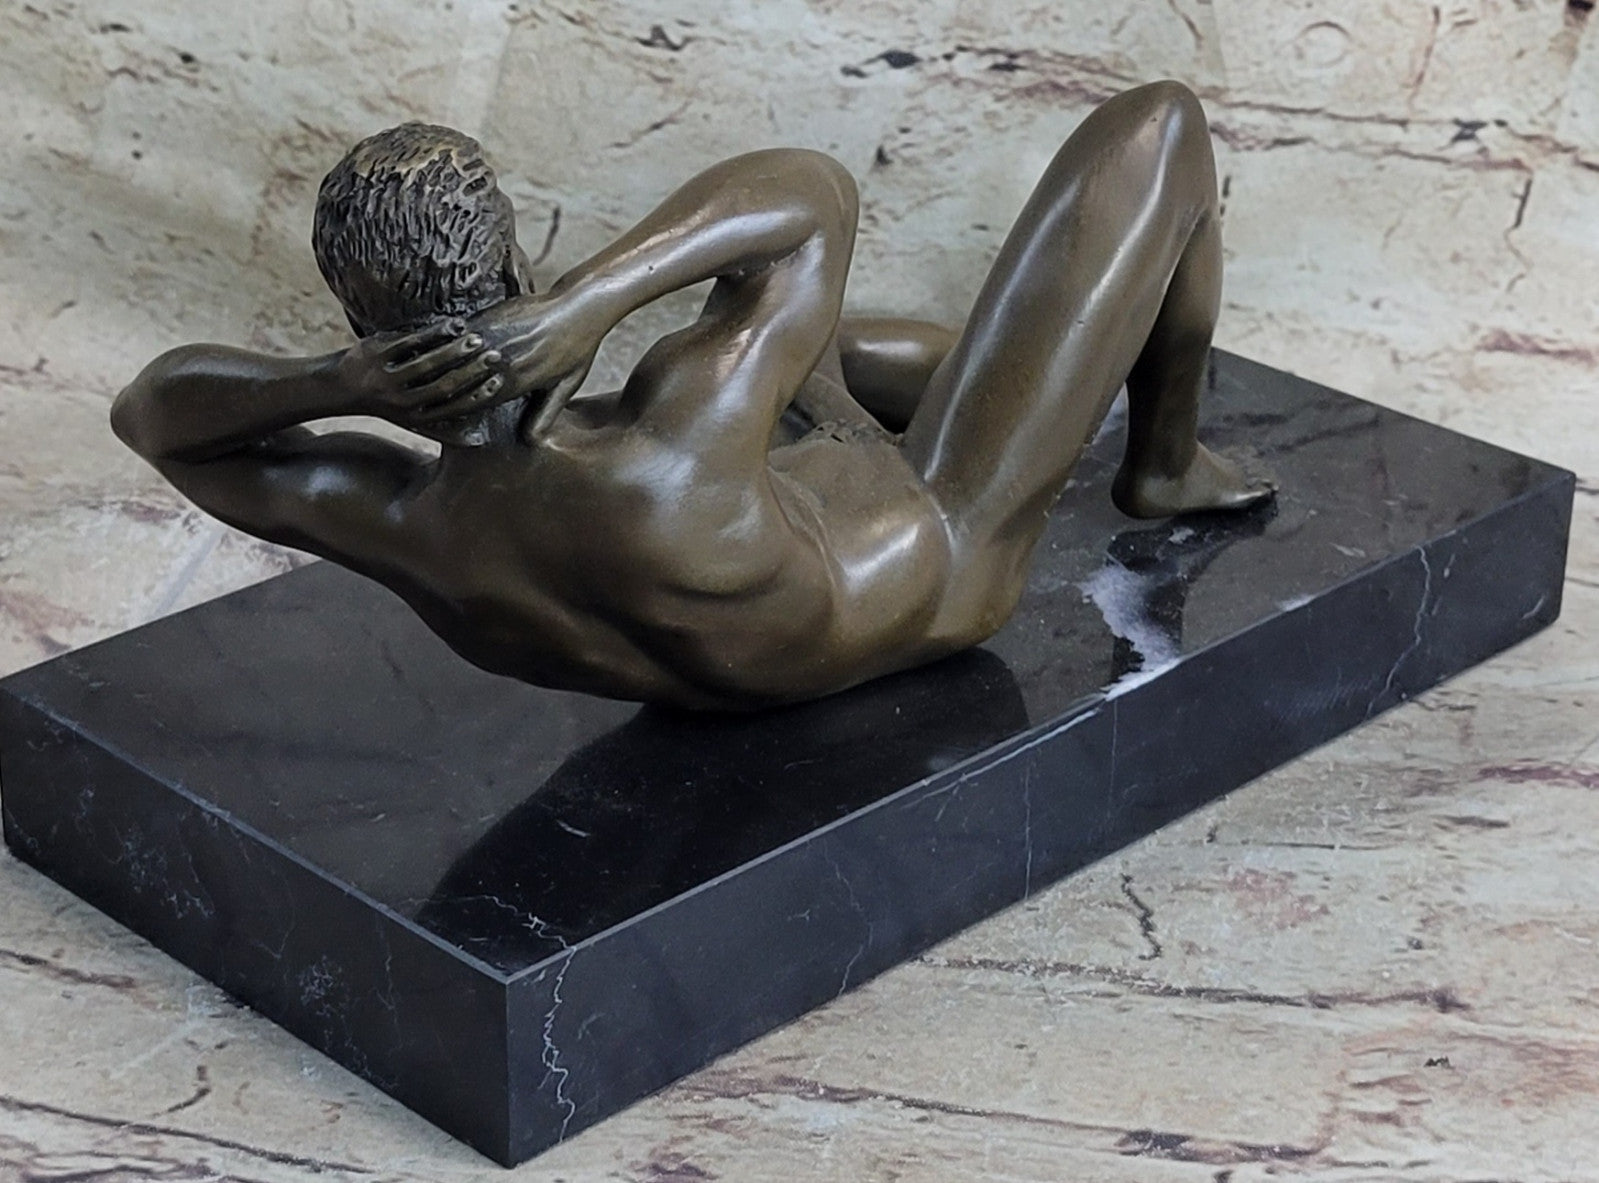 Nude Bronze Sculpture Hot Cast Museum Quality Figurine Figure Decor Lost Wax